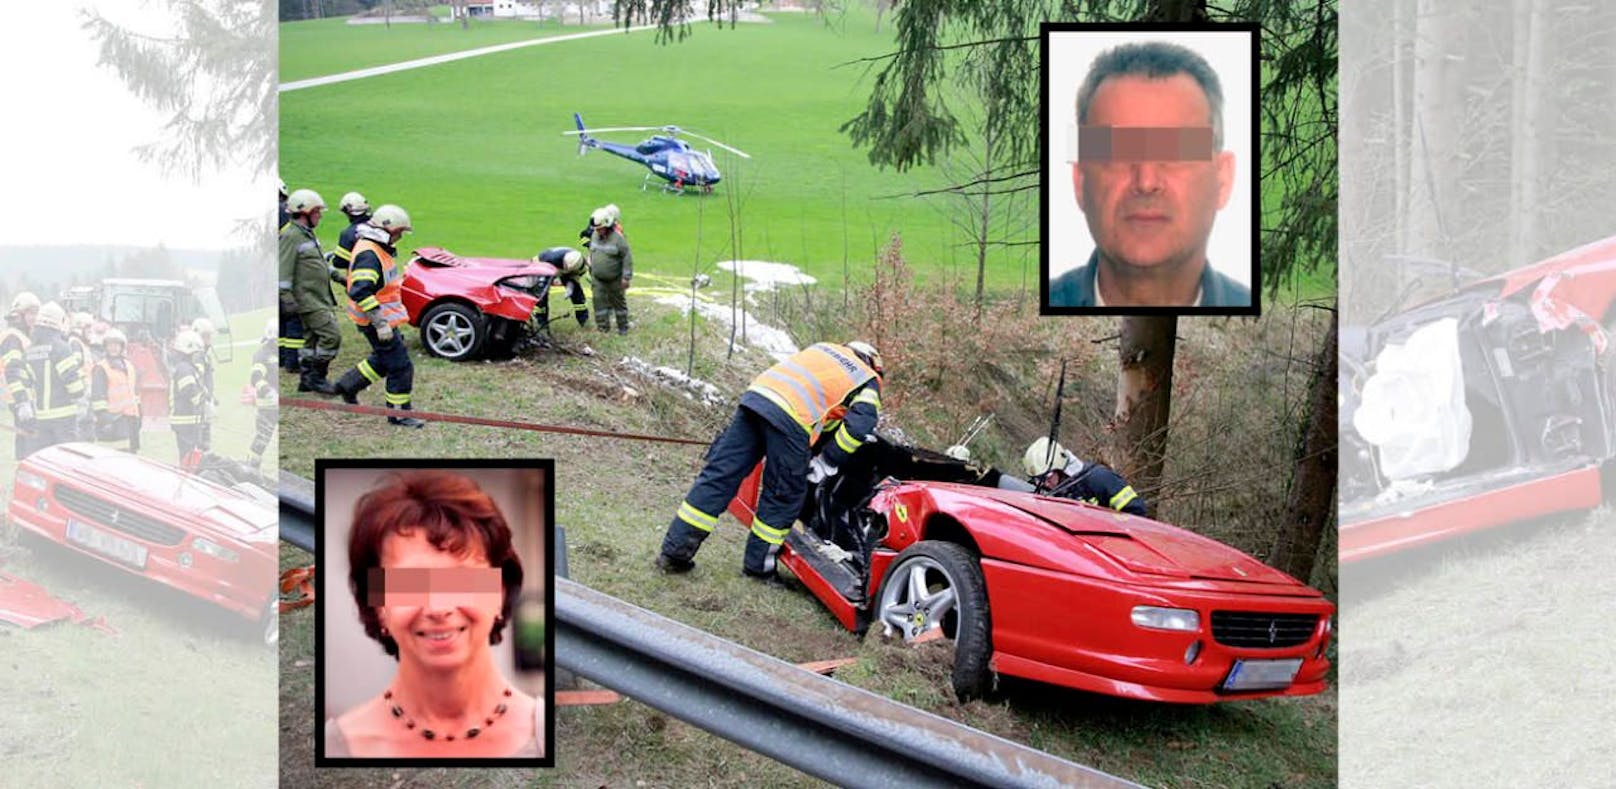 Bei dem Ferrari-Crash verunglückten Helmut Sch. und seine Lebensgefährtin Greti F. tödlich. 